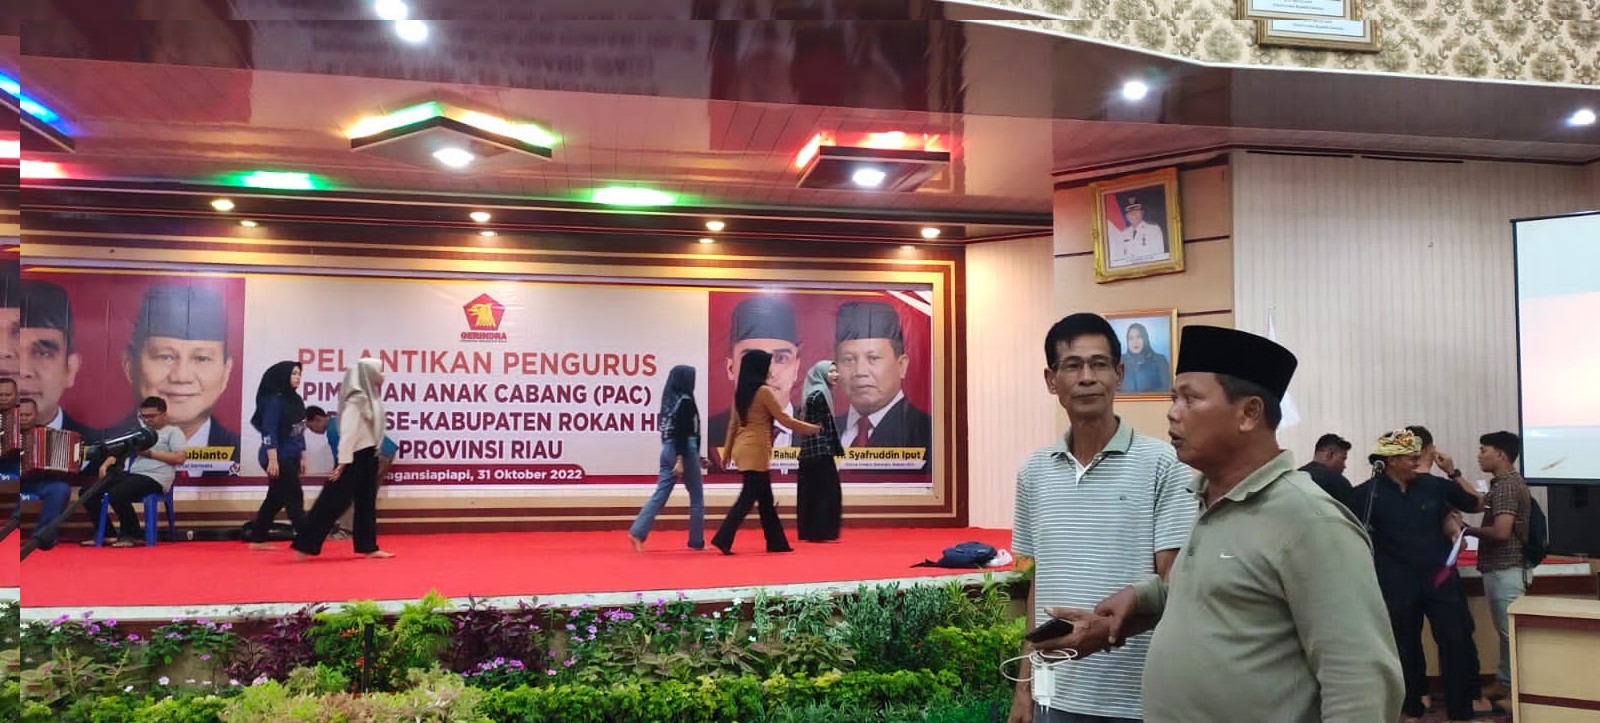 Ketua dan Wakil Ketua Gerindra Rohil Tinjau Lokasi Lantik PAC